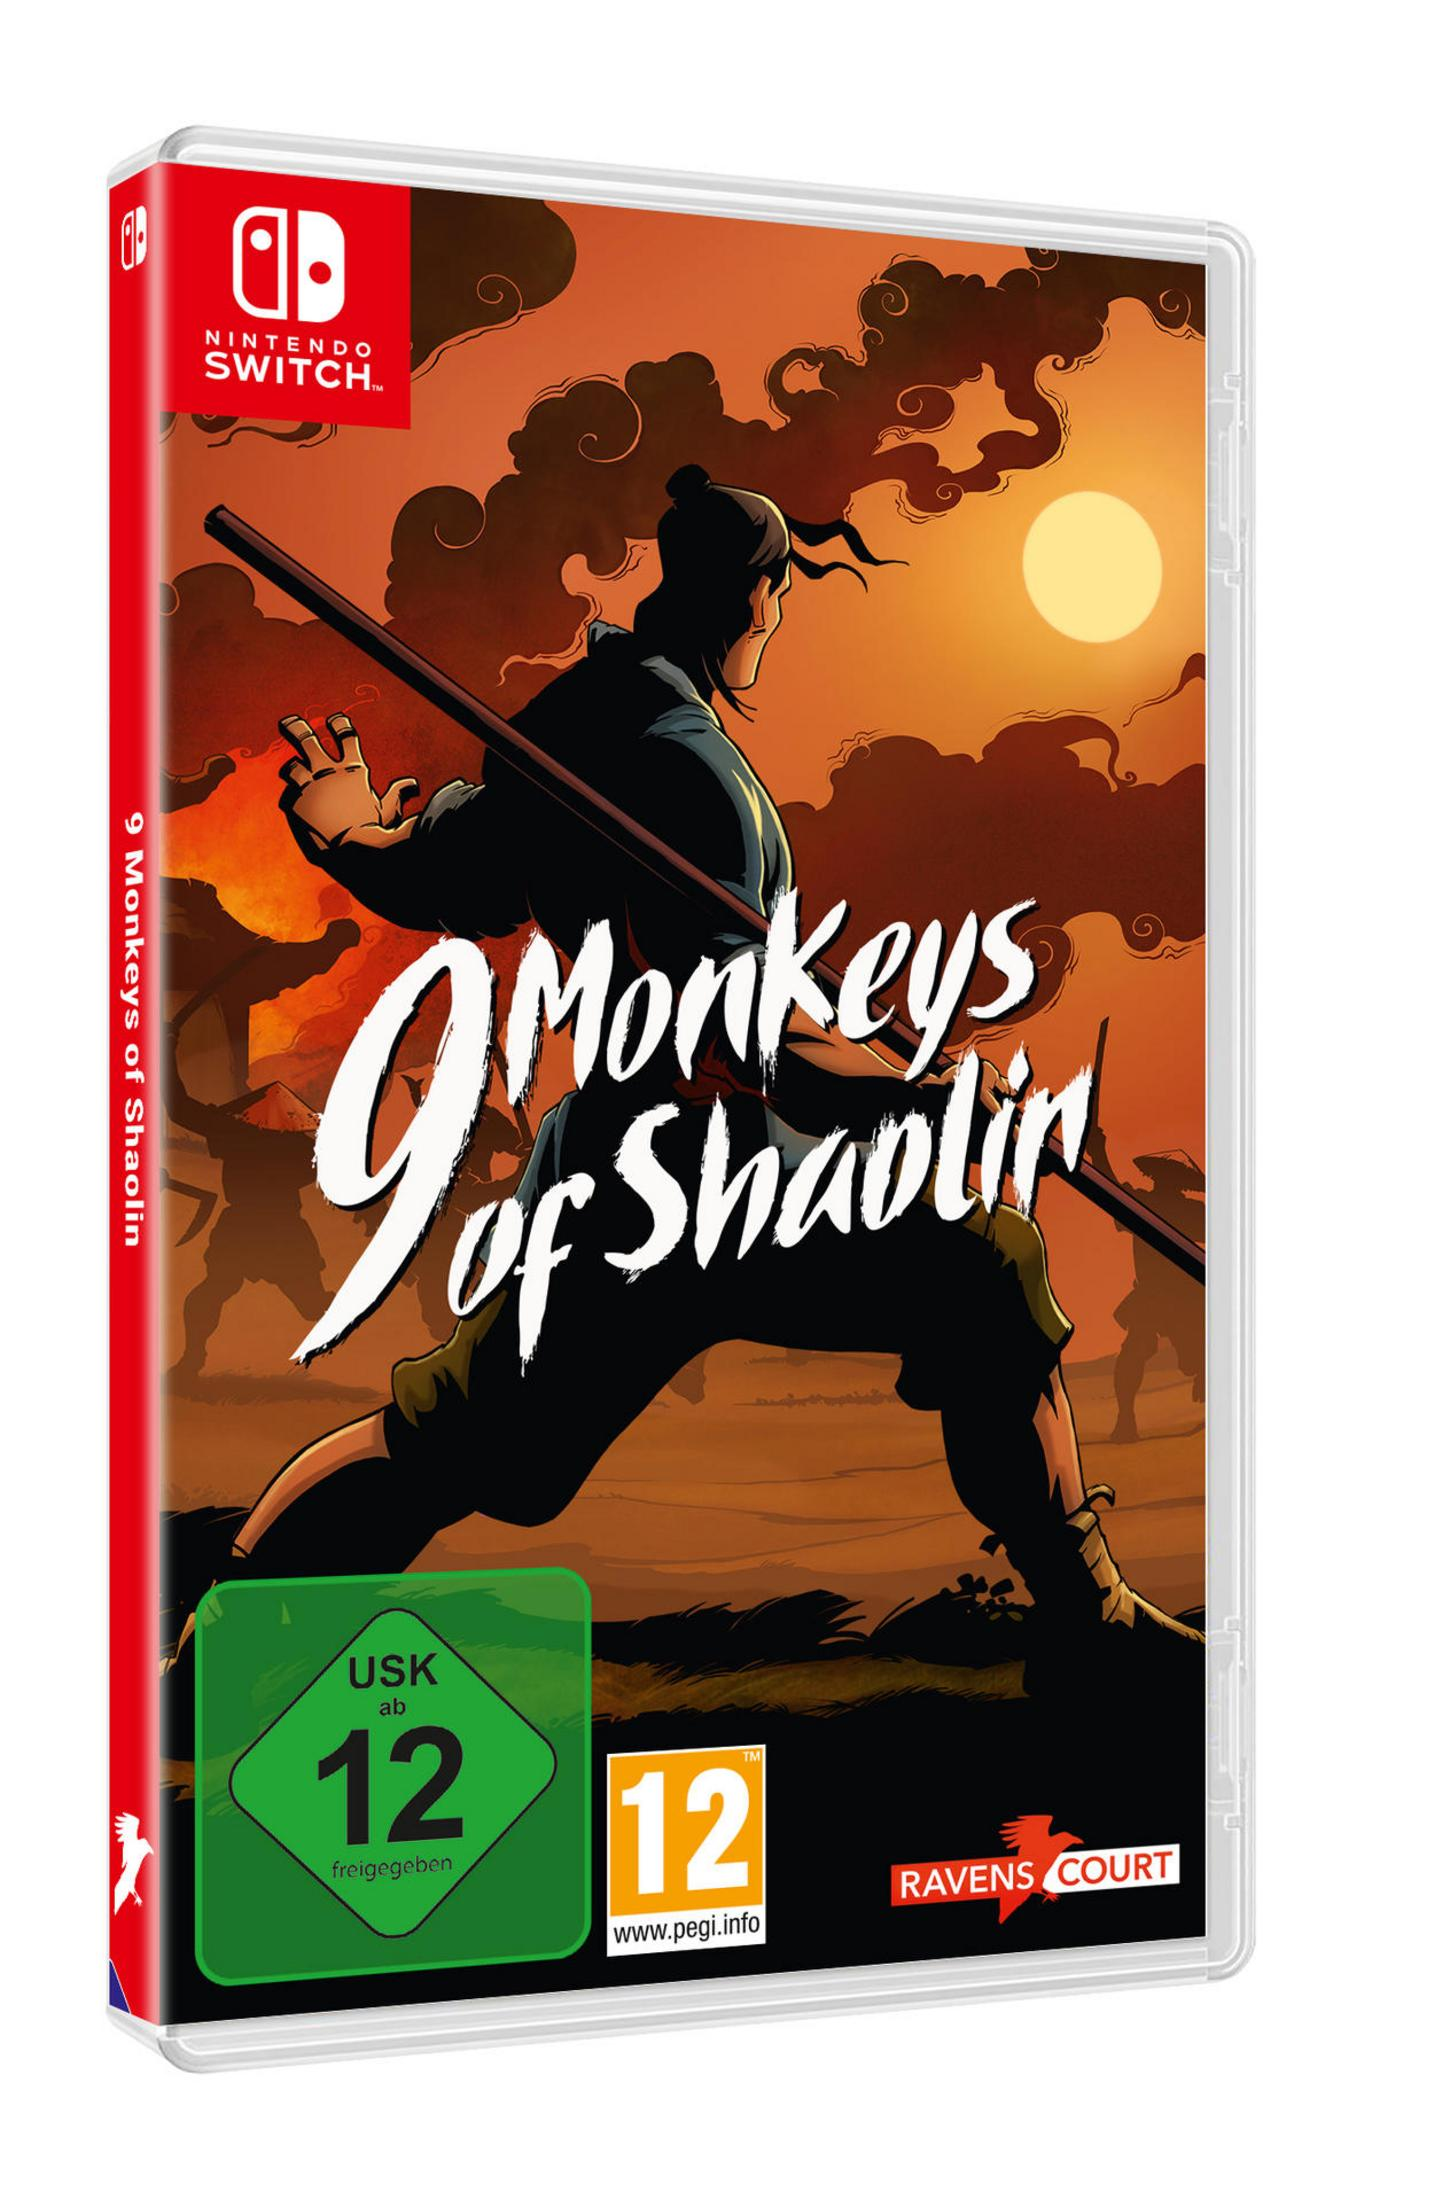 9 Switch] of [Nintendo Monkeys Shaolin -